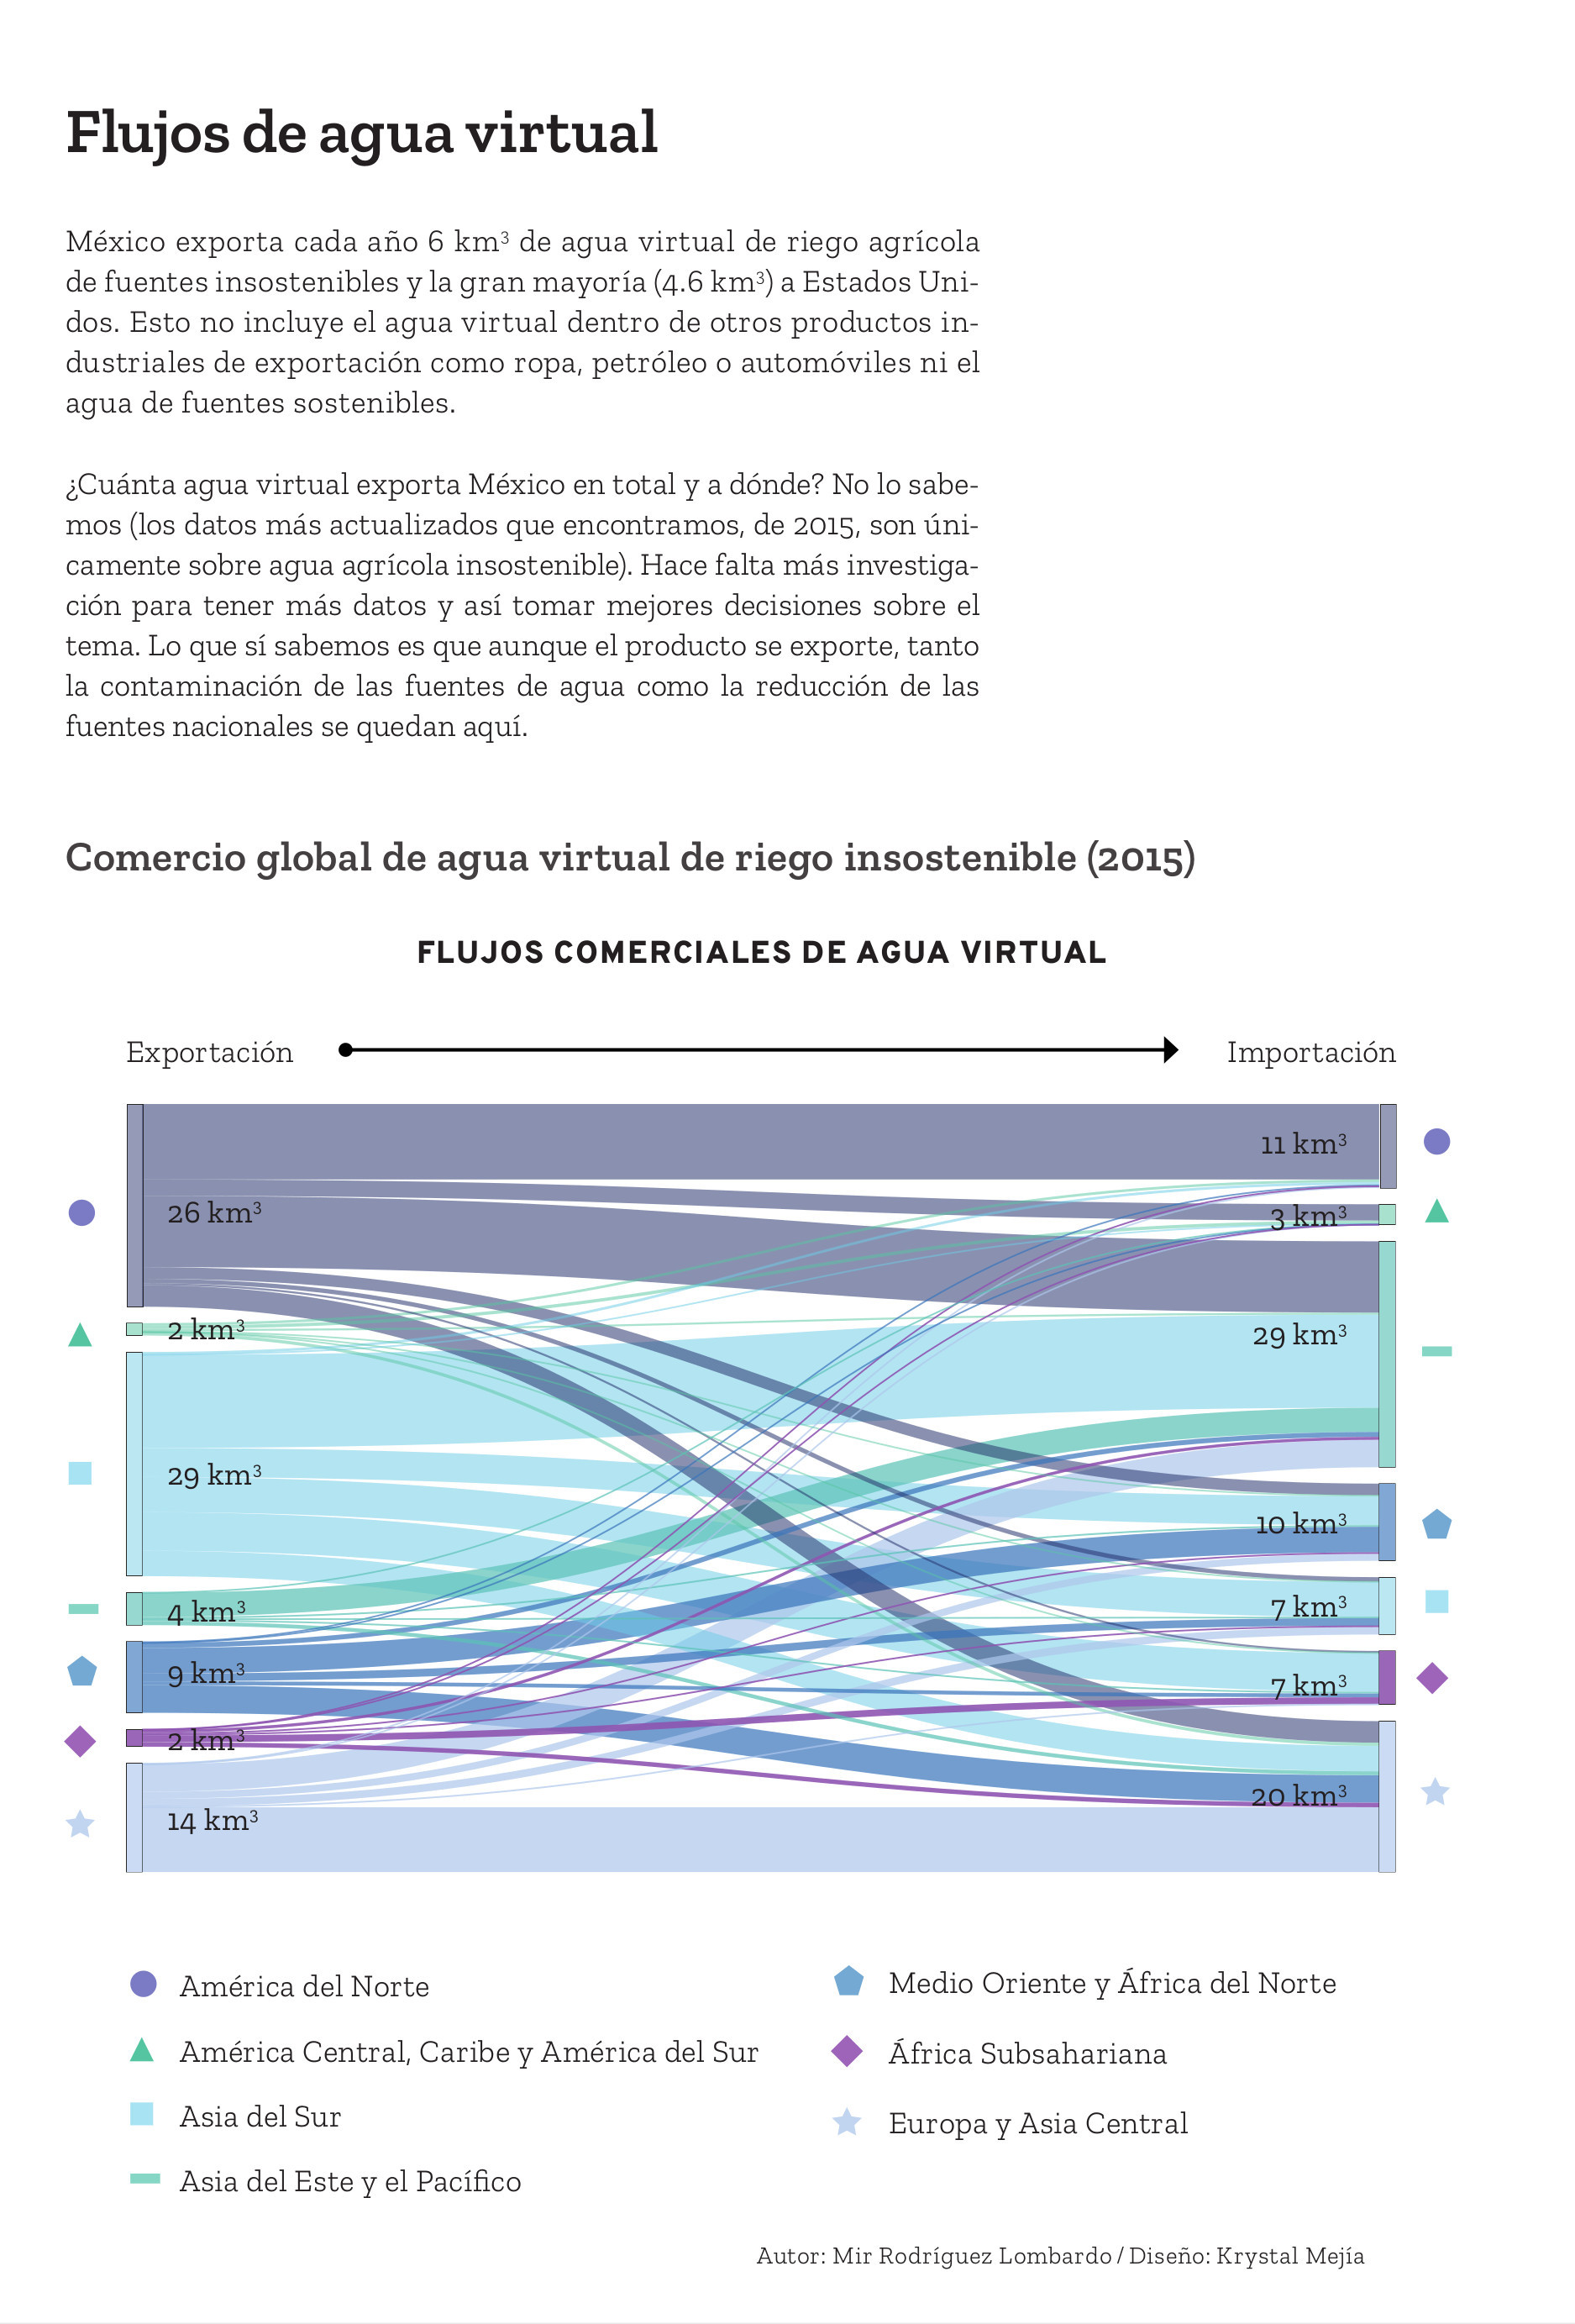 Diagrama Sankey sobre el comercio global de agua virtual de riego insostenible